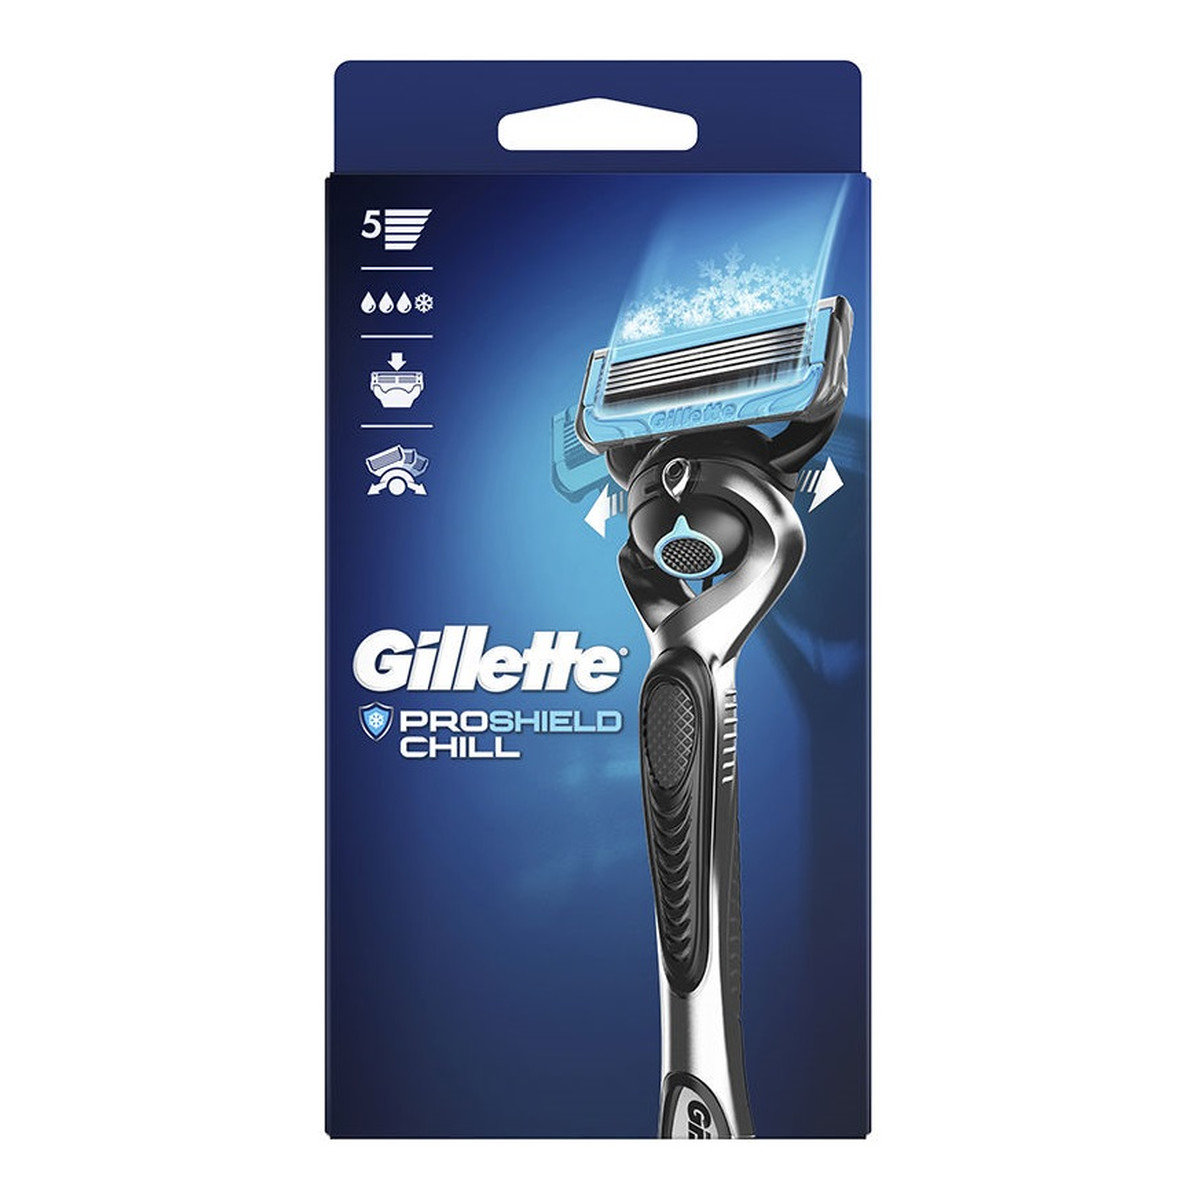 Gillette Proshield chill maszynka do golenia dla mężczyzn